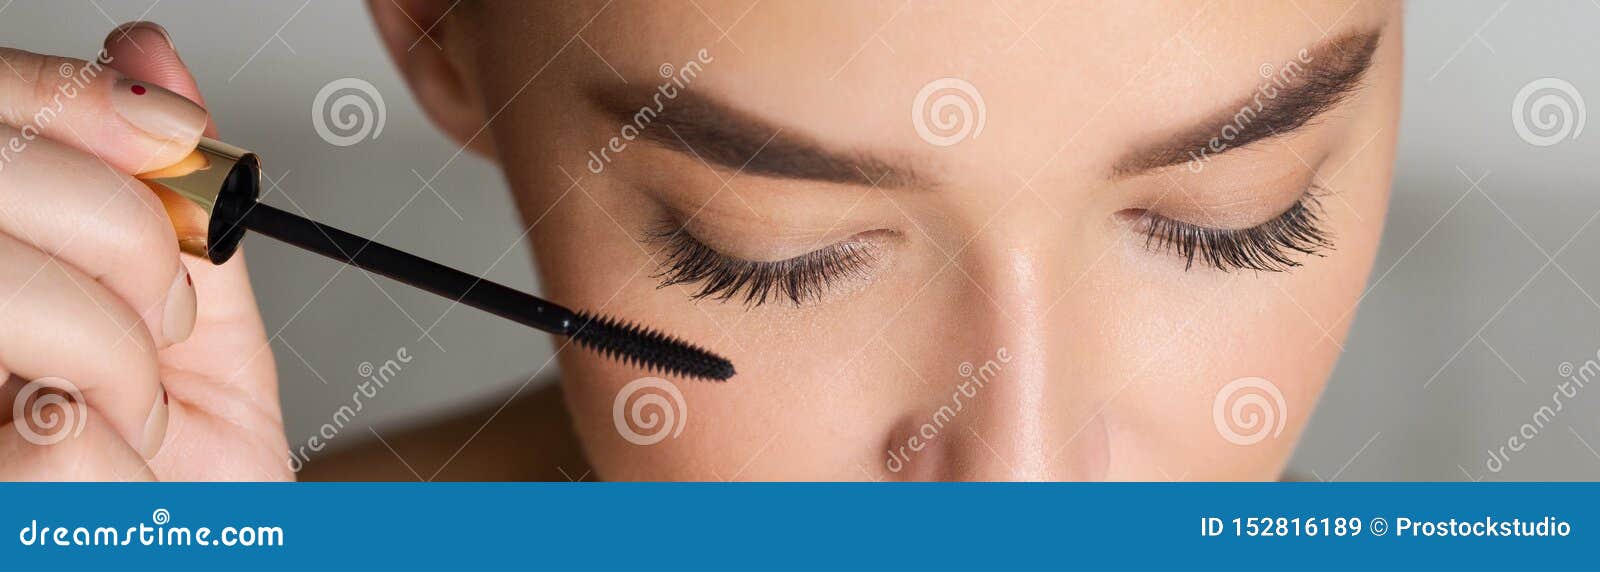 woman doing makeup, applying black mascara, closeup